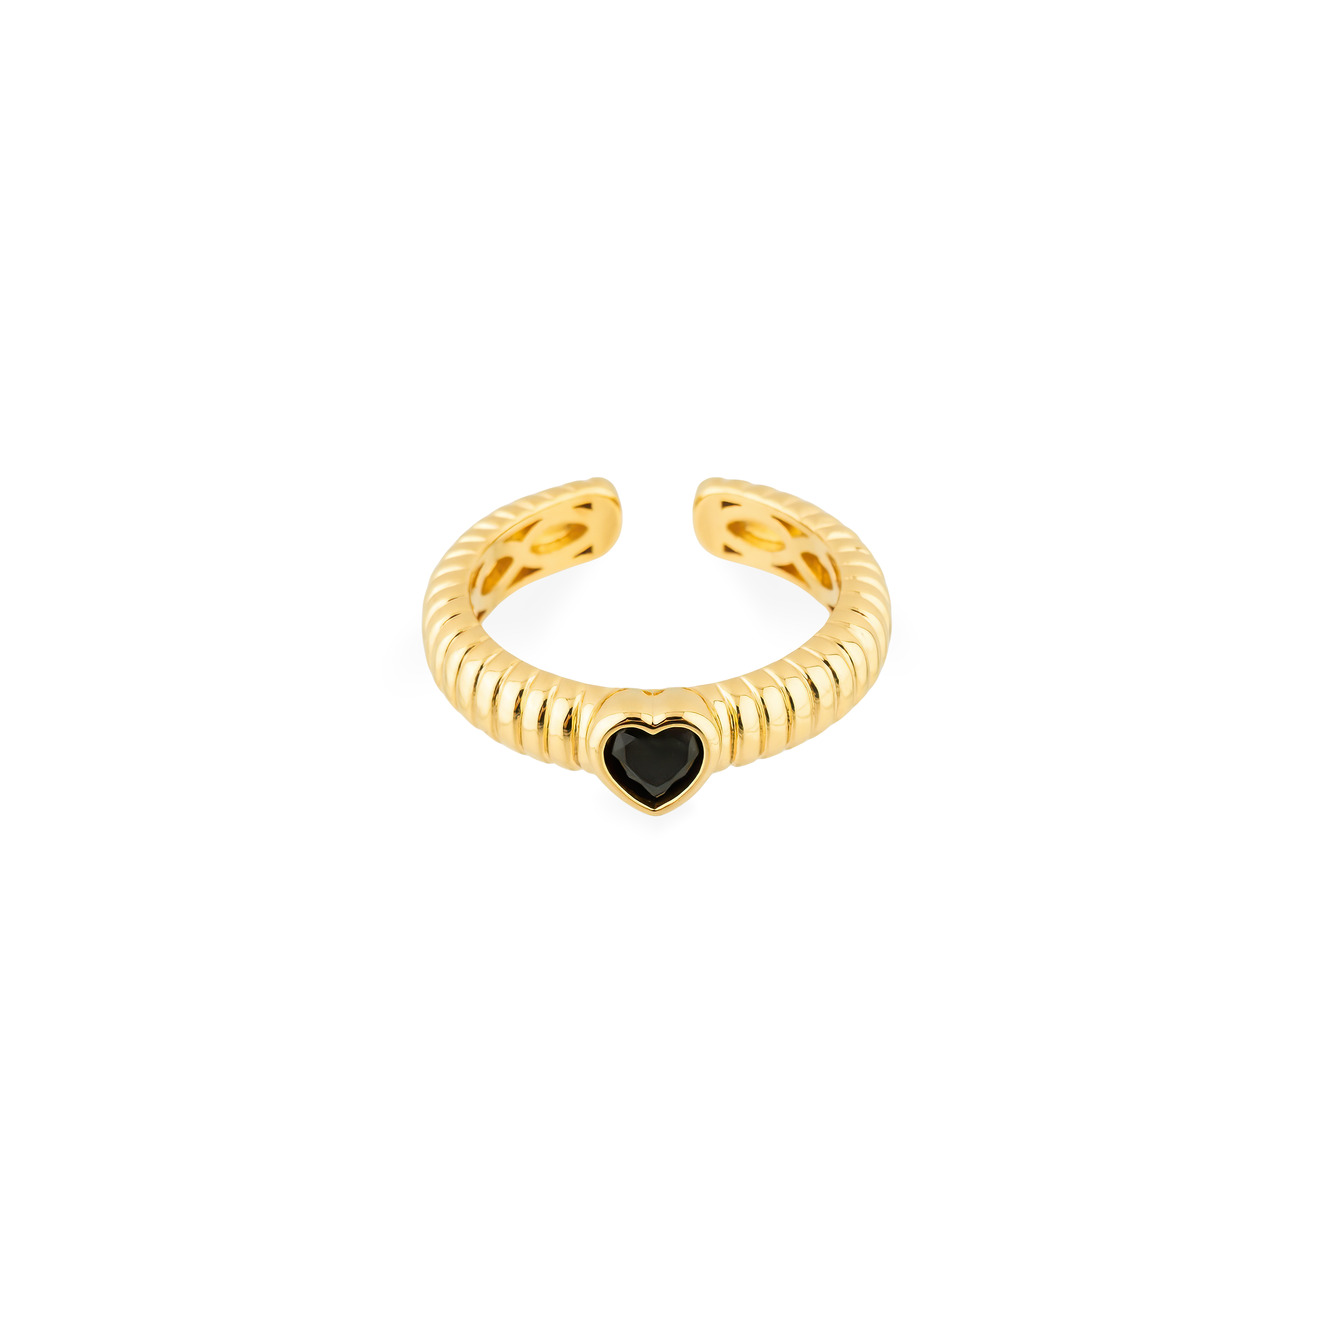 Herald Percy Золотистое фигурное кольцо с черным сердцем aqua золотистое кольцо печатка с белым сердцем